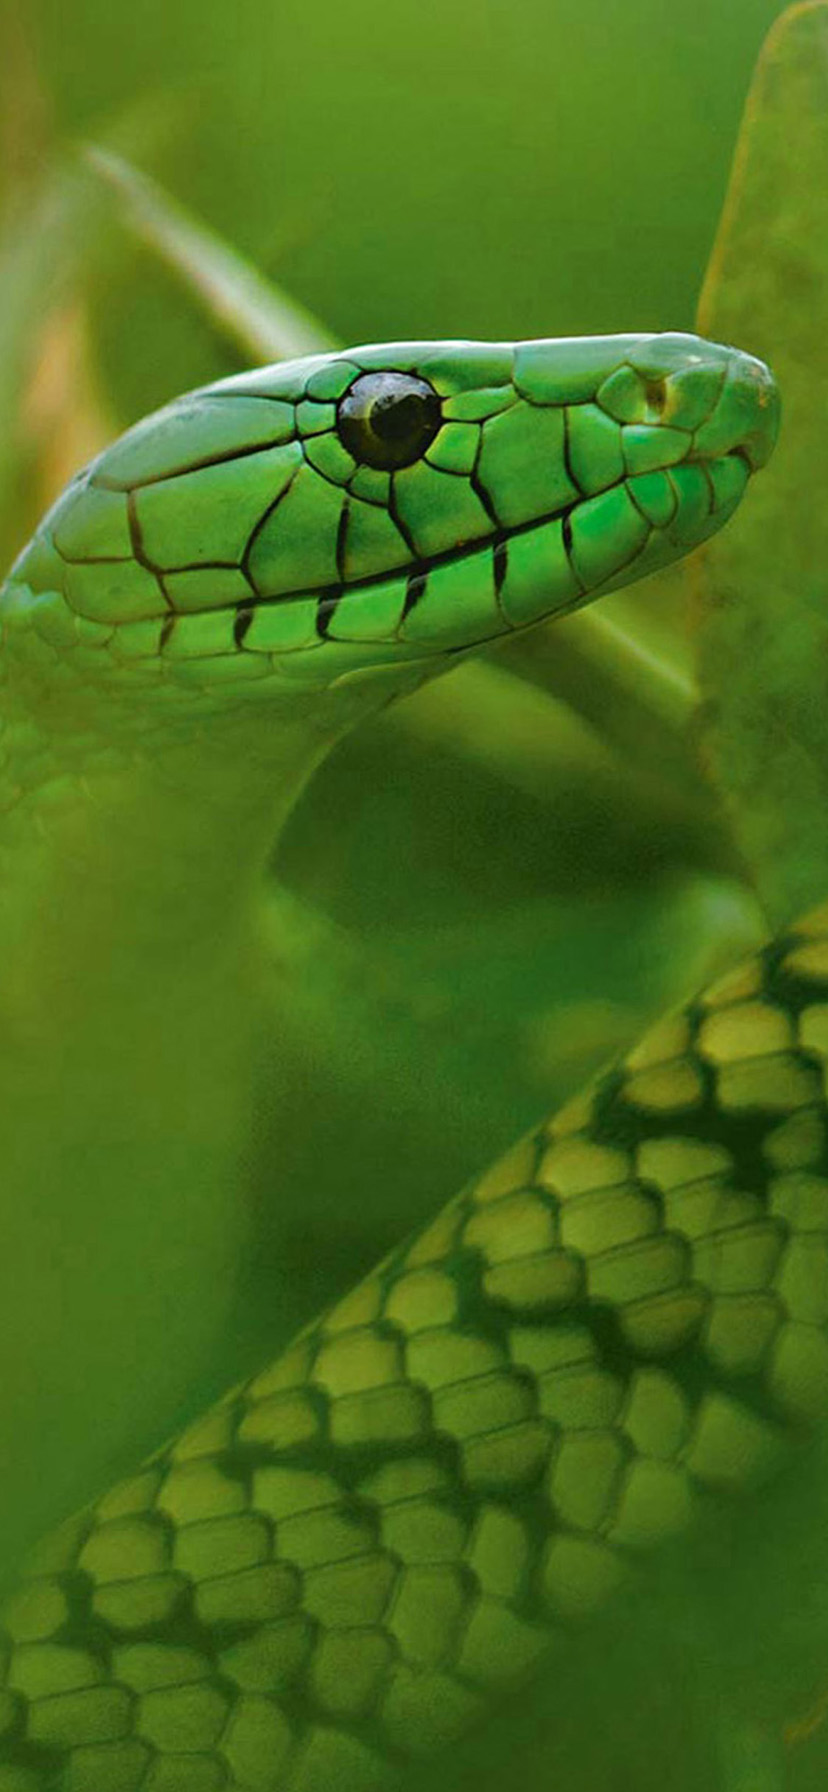 Iphone Xr Wallpaper For Green Snake Wallpaper Hd 828 - Mattias Klum , HD Wallpaper & Backgrounds